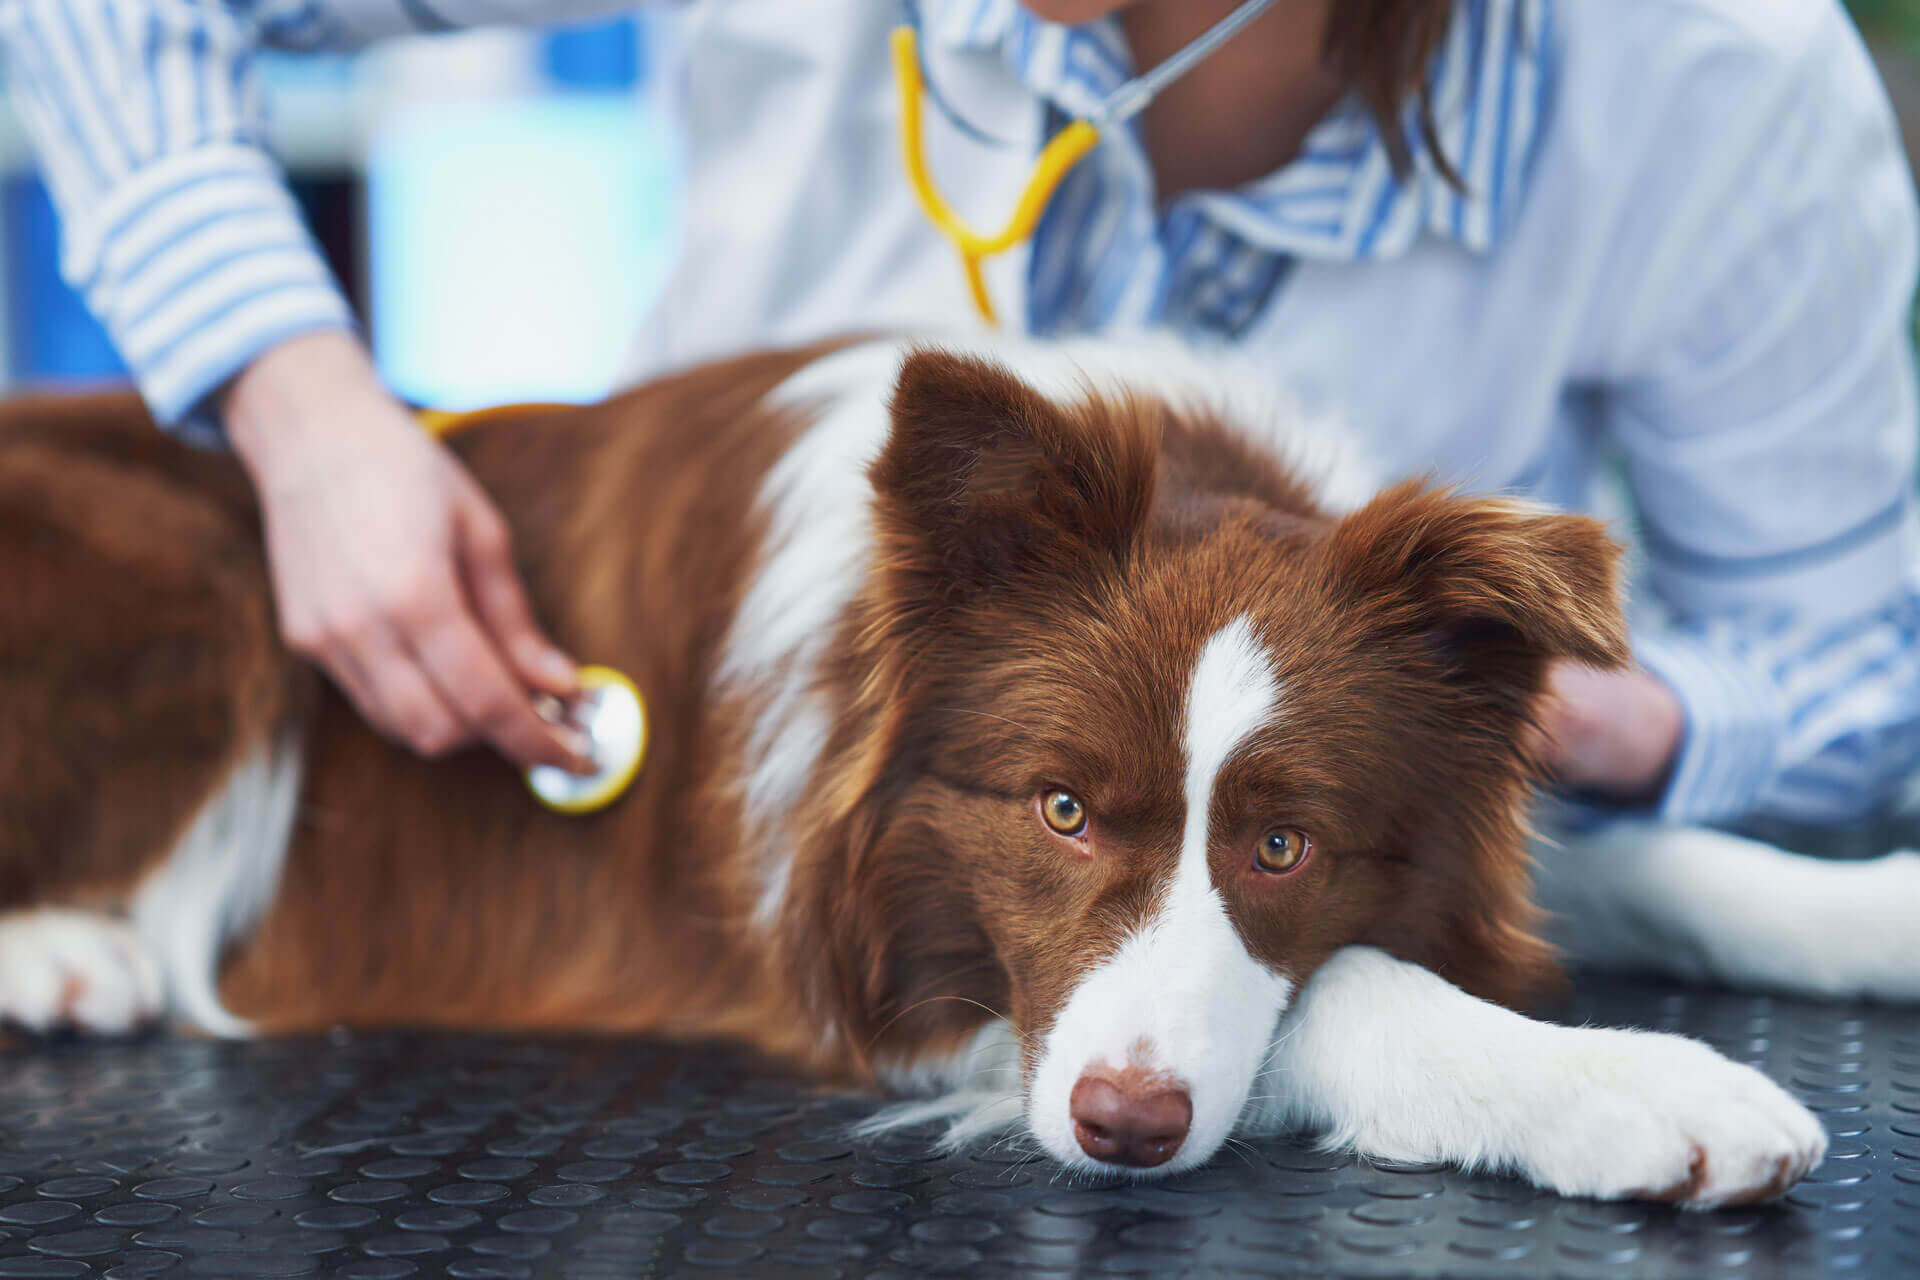 cane bianco e marrone sta steso su un tavolo nero e il veterinario lo visista con uno stetoscopio